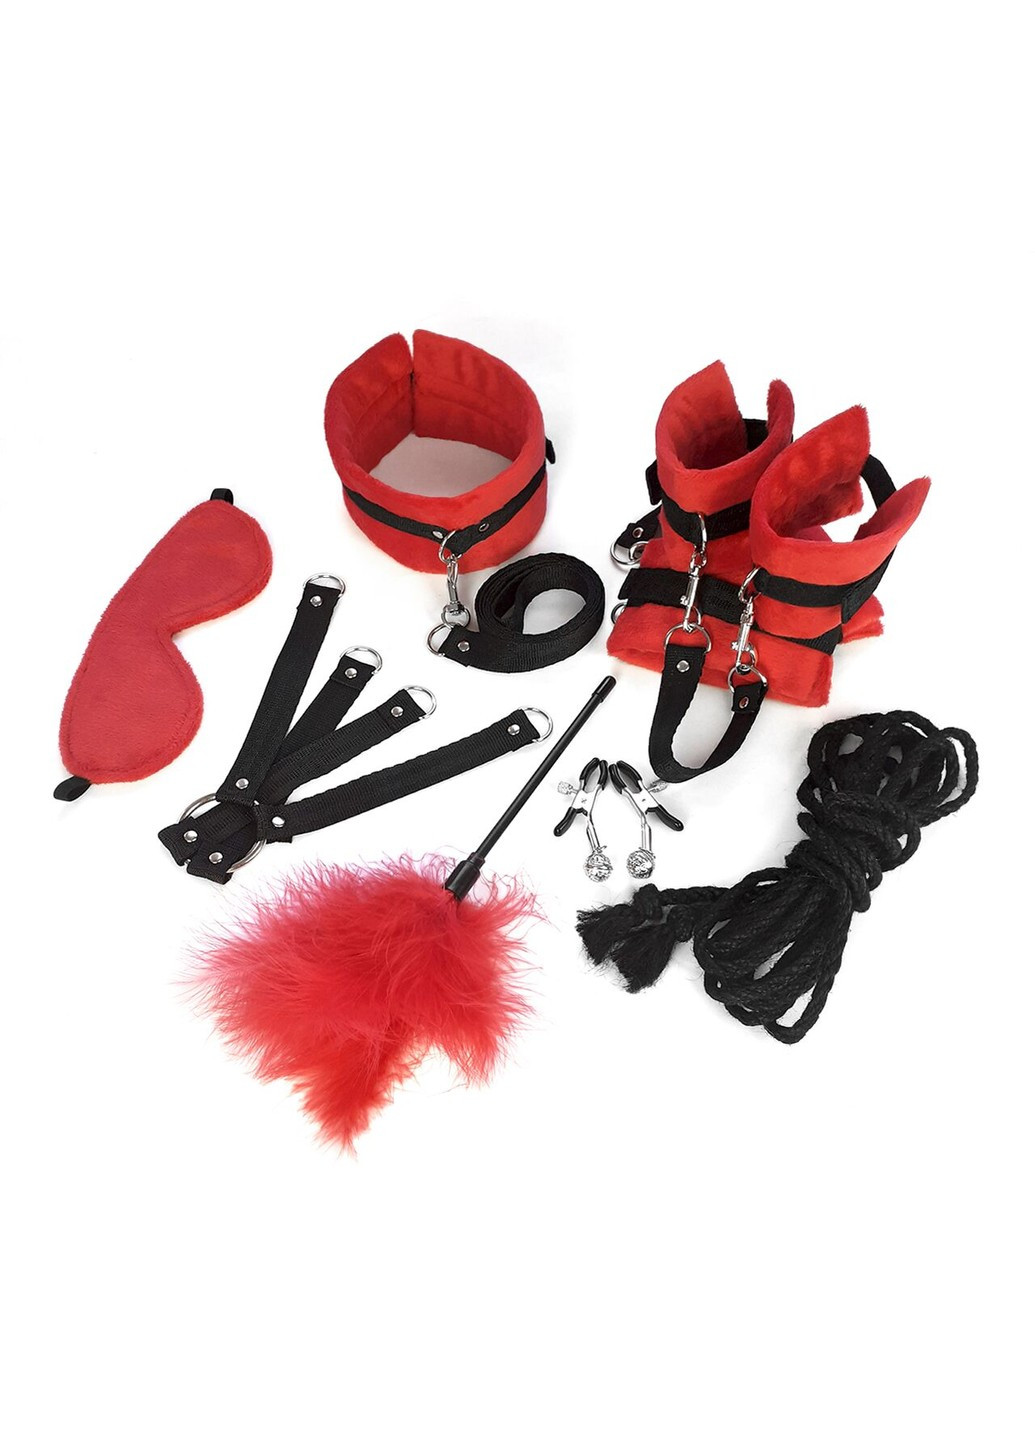 Набор БДСМ - Soft Touch BDSM Set, 9 предметов, Красный Art of Sex (277235441)